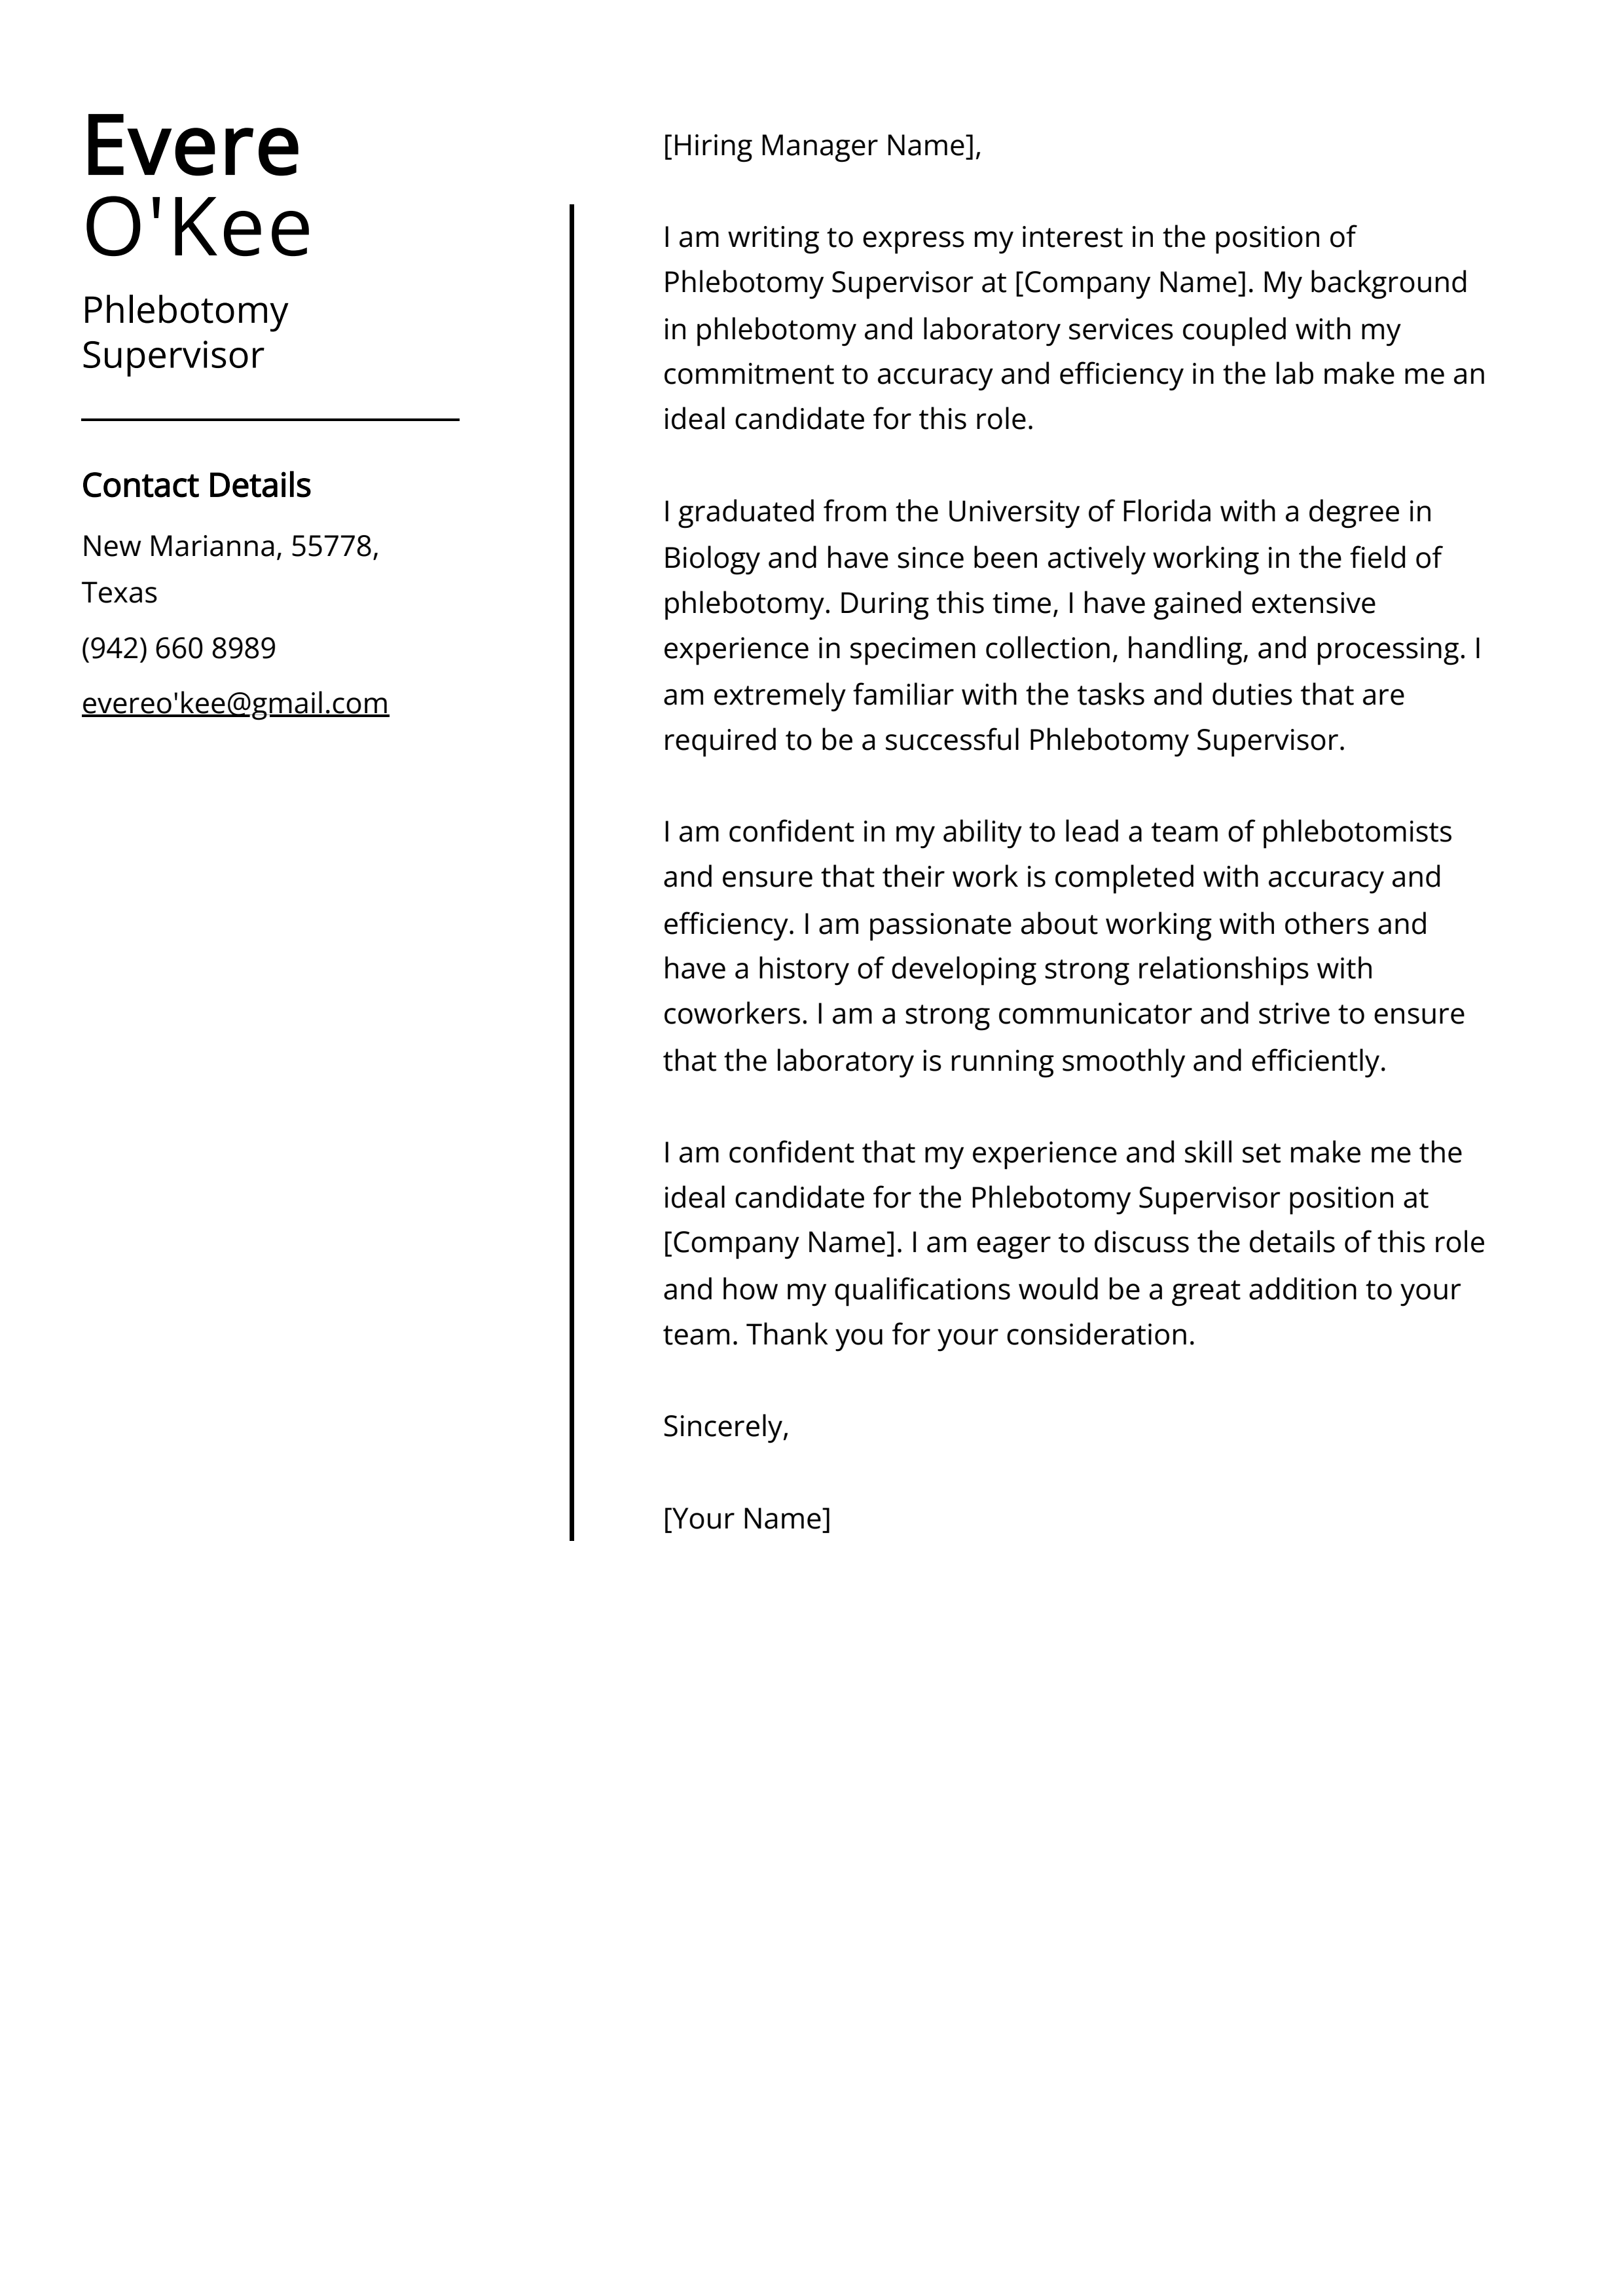 Phlebotomy Supervisor Cover Letter Example